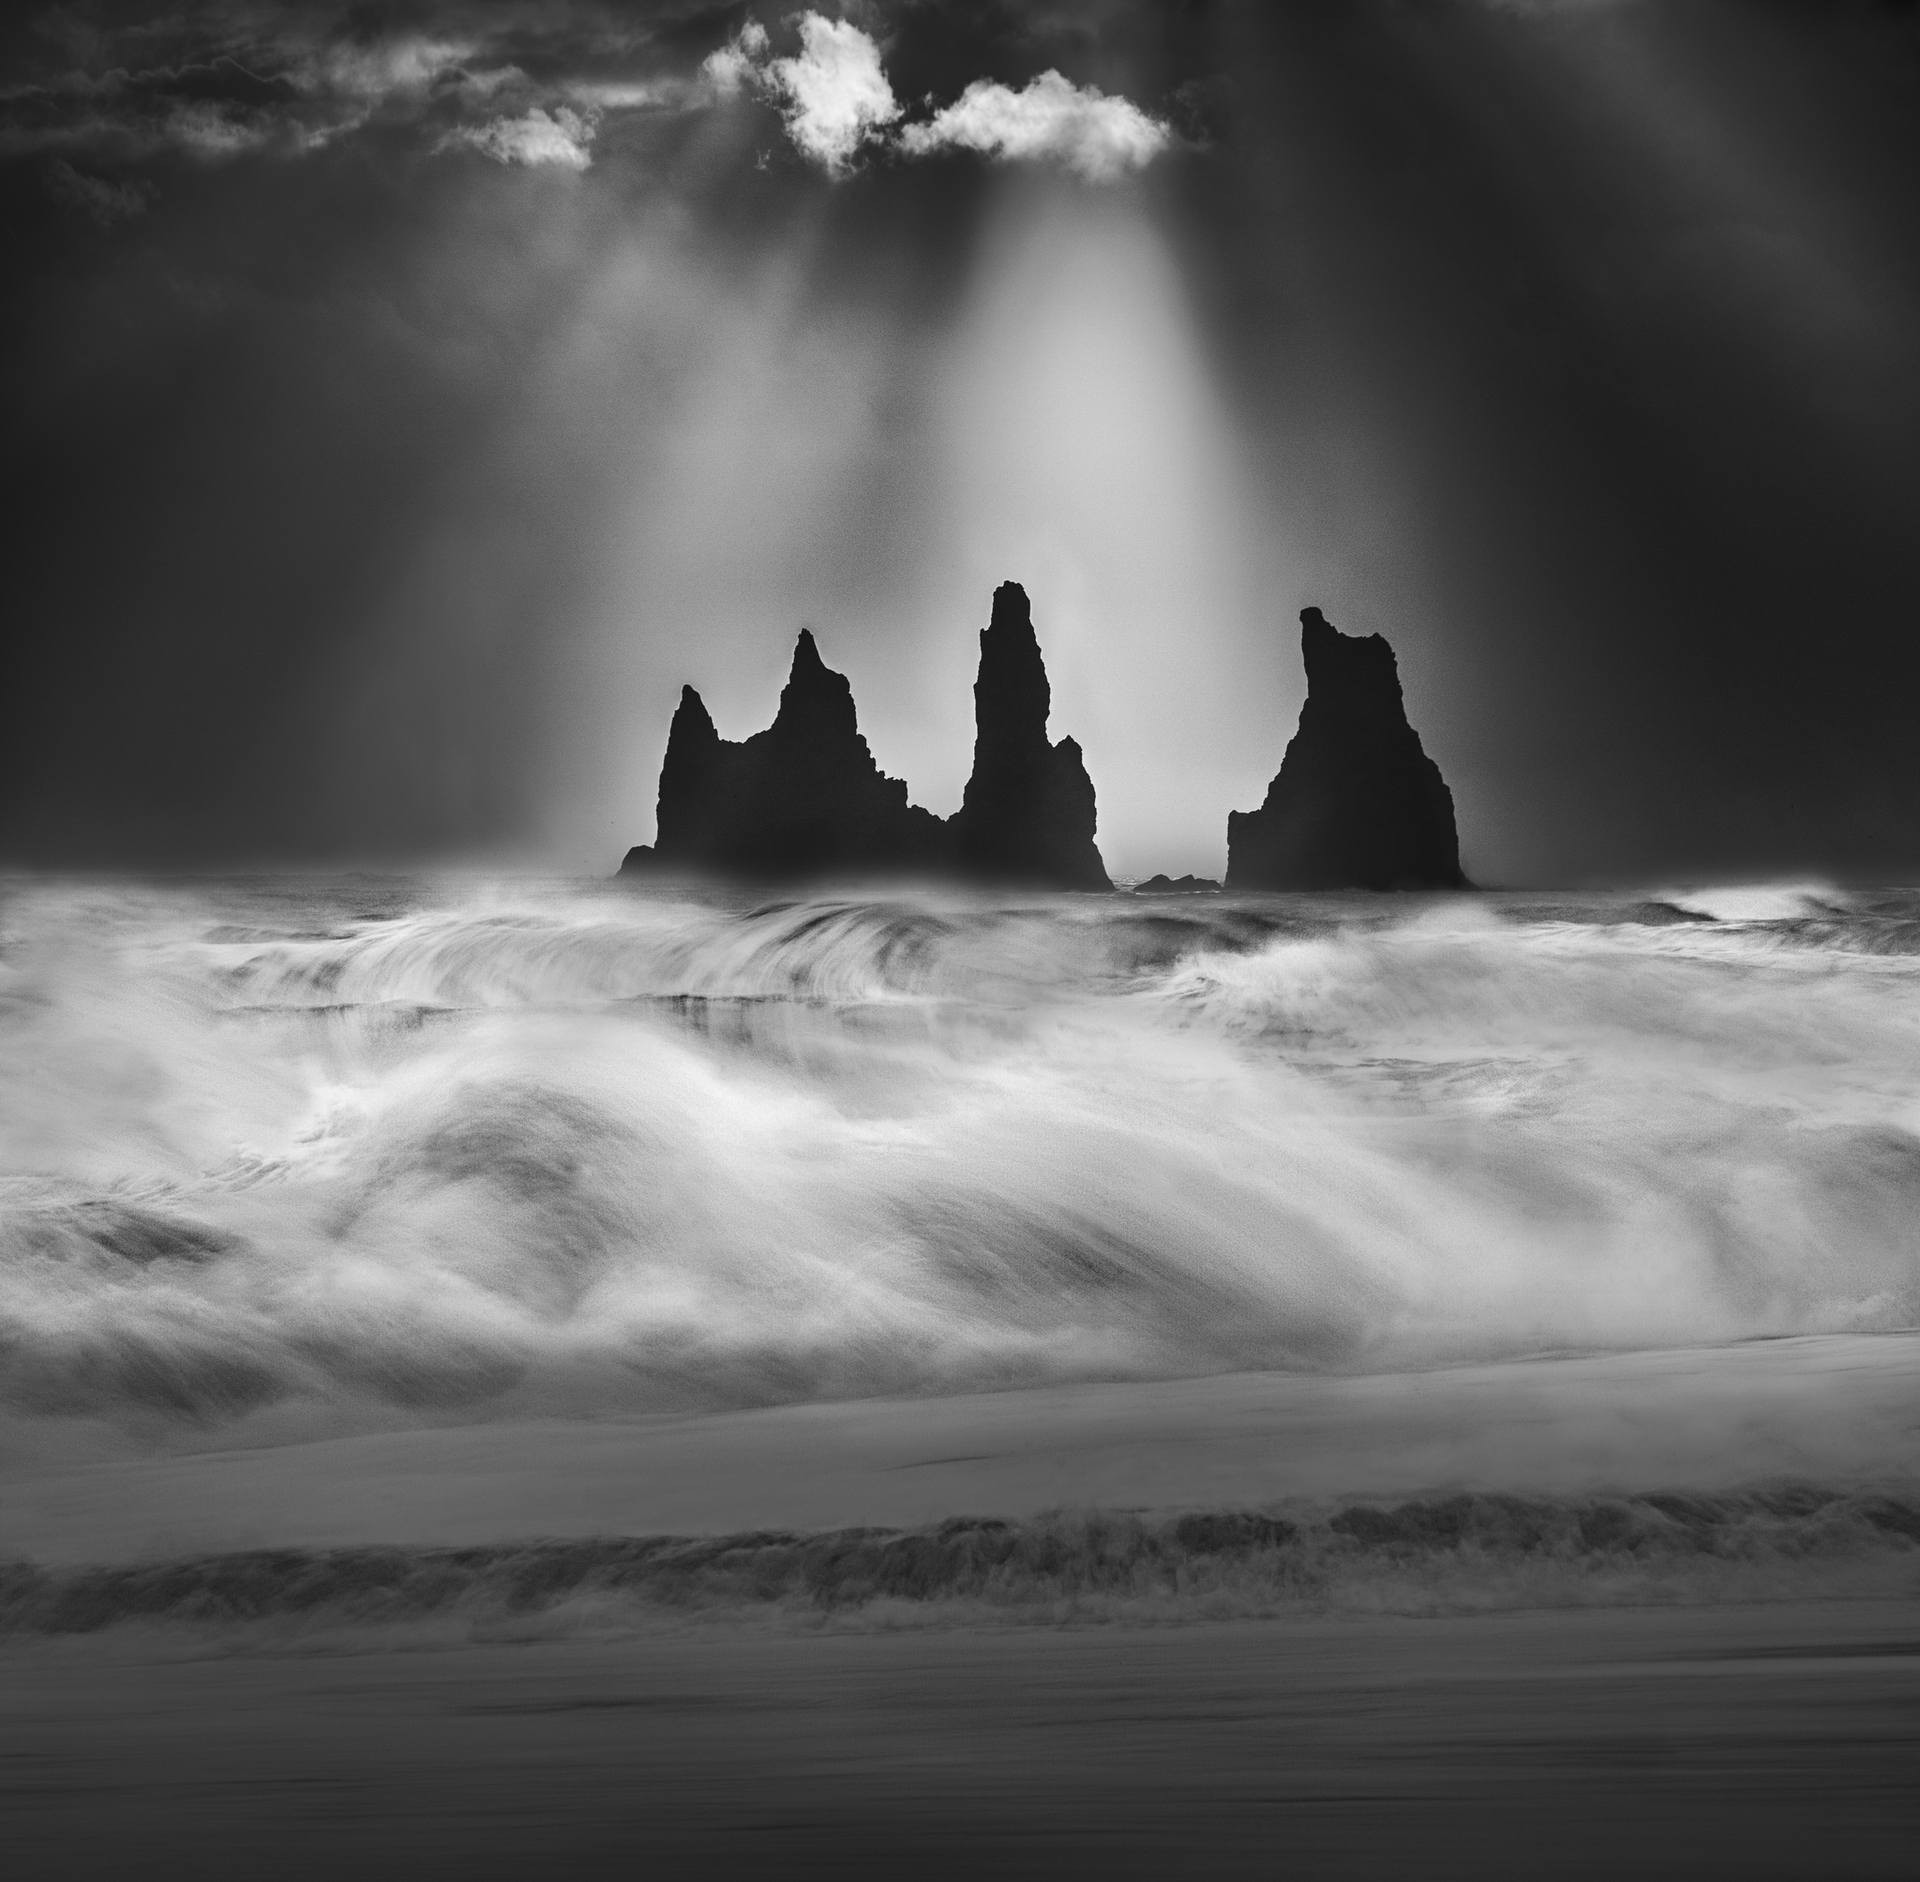 Базальтовые кекуры Рейнисдрангар и сердящийся Атлантический океан, Исландия. Автор Петер Свобода